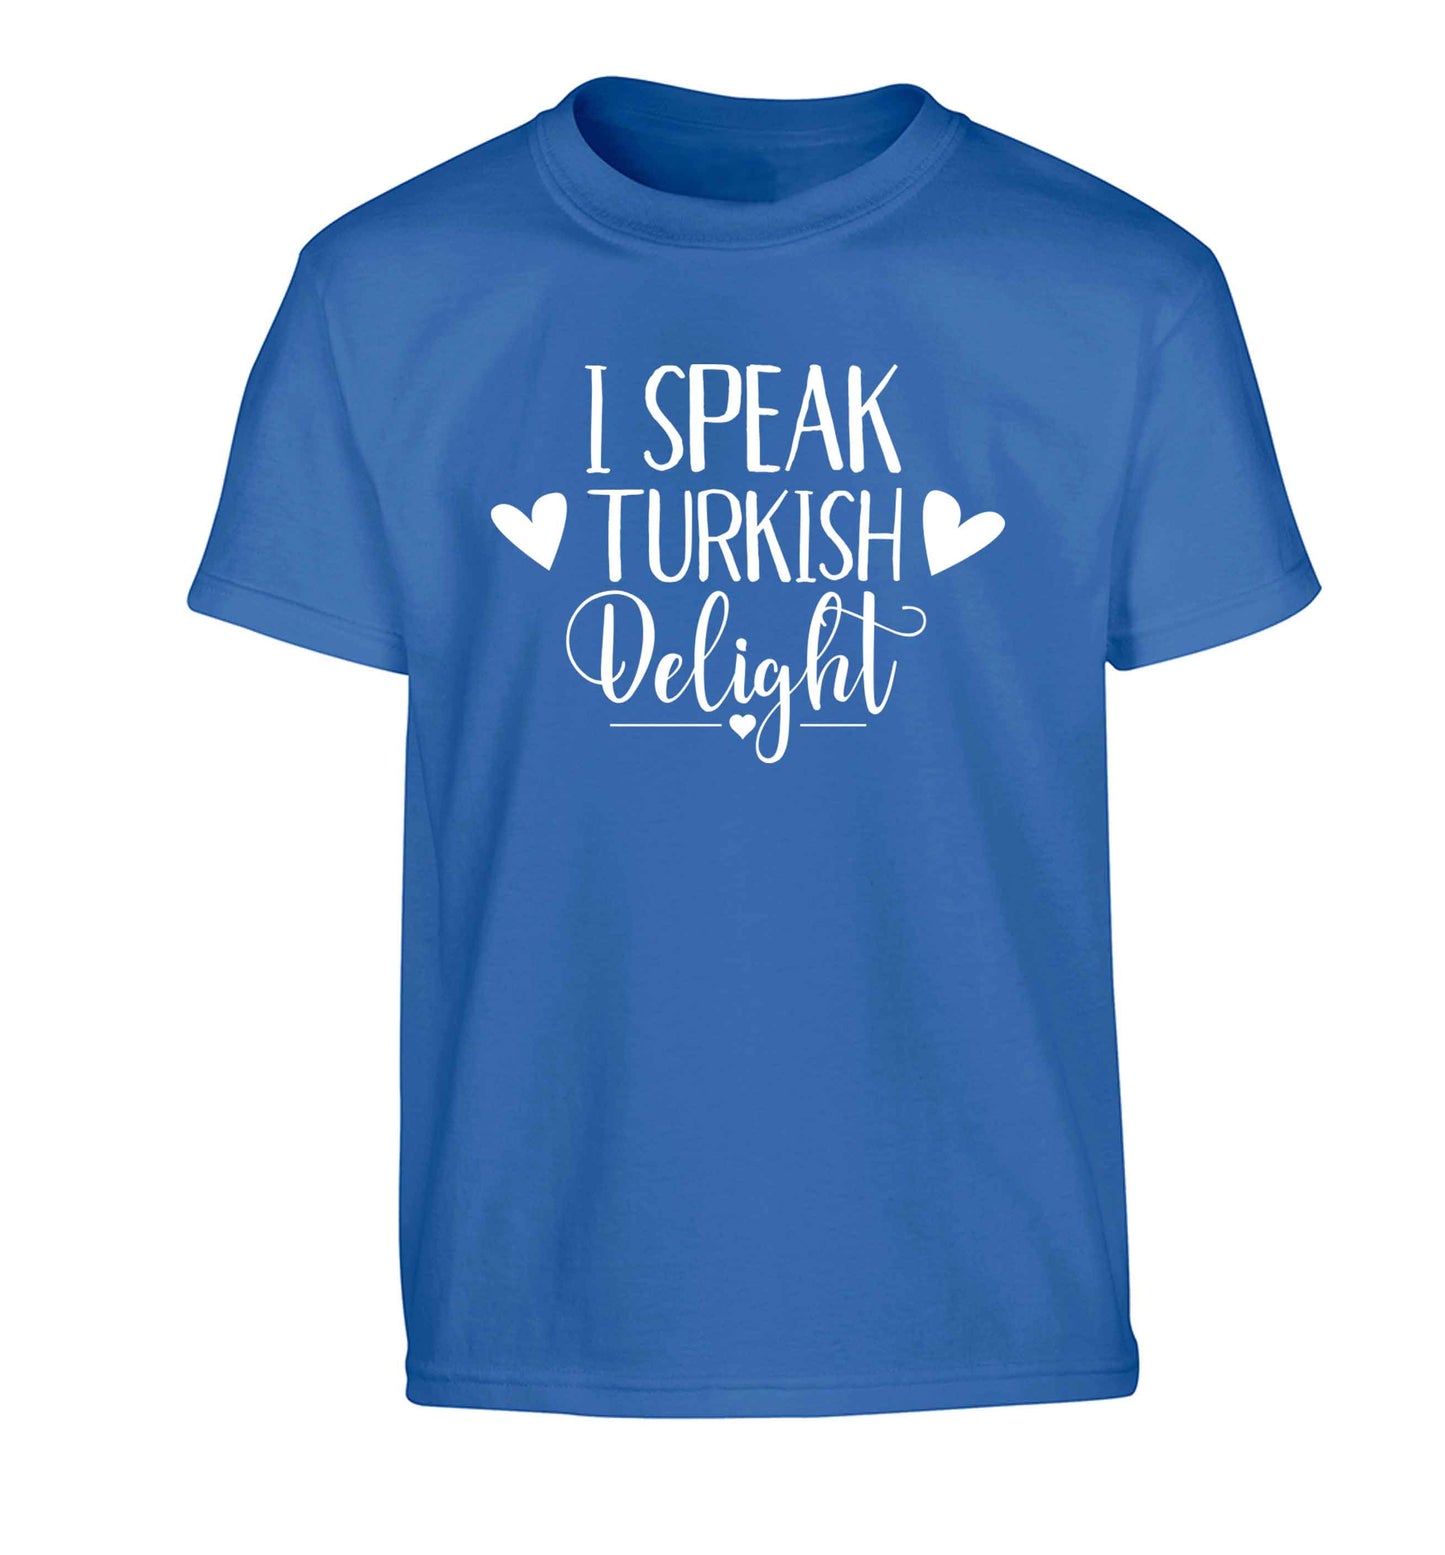 I speak turkish...delight Children's blue Tshirt 12-13 Years